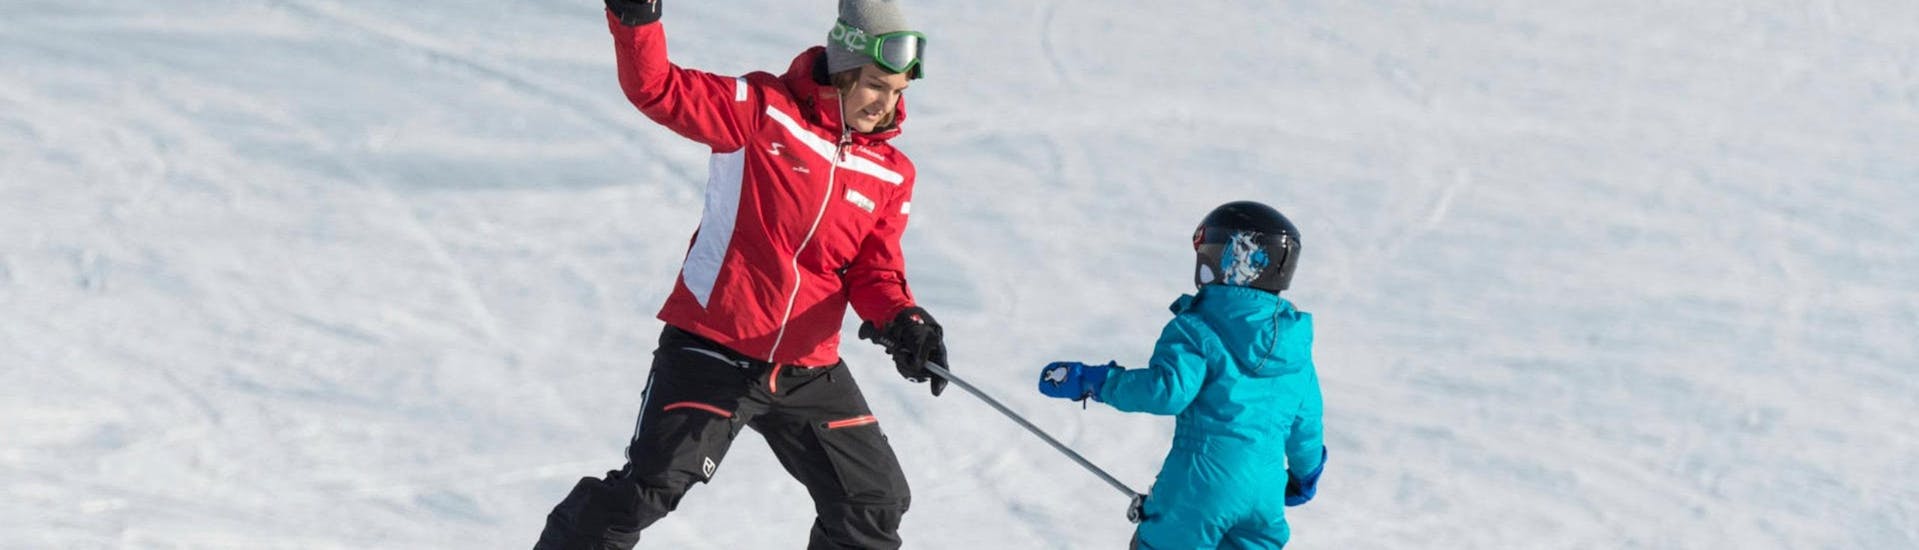 Cours particulier de ski Enfants dès 4 ans - Premier cours.